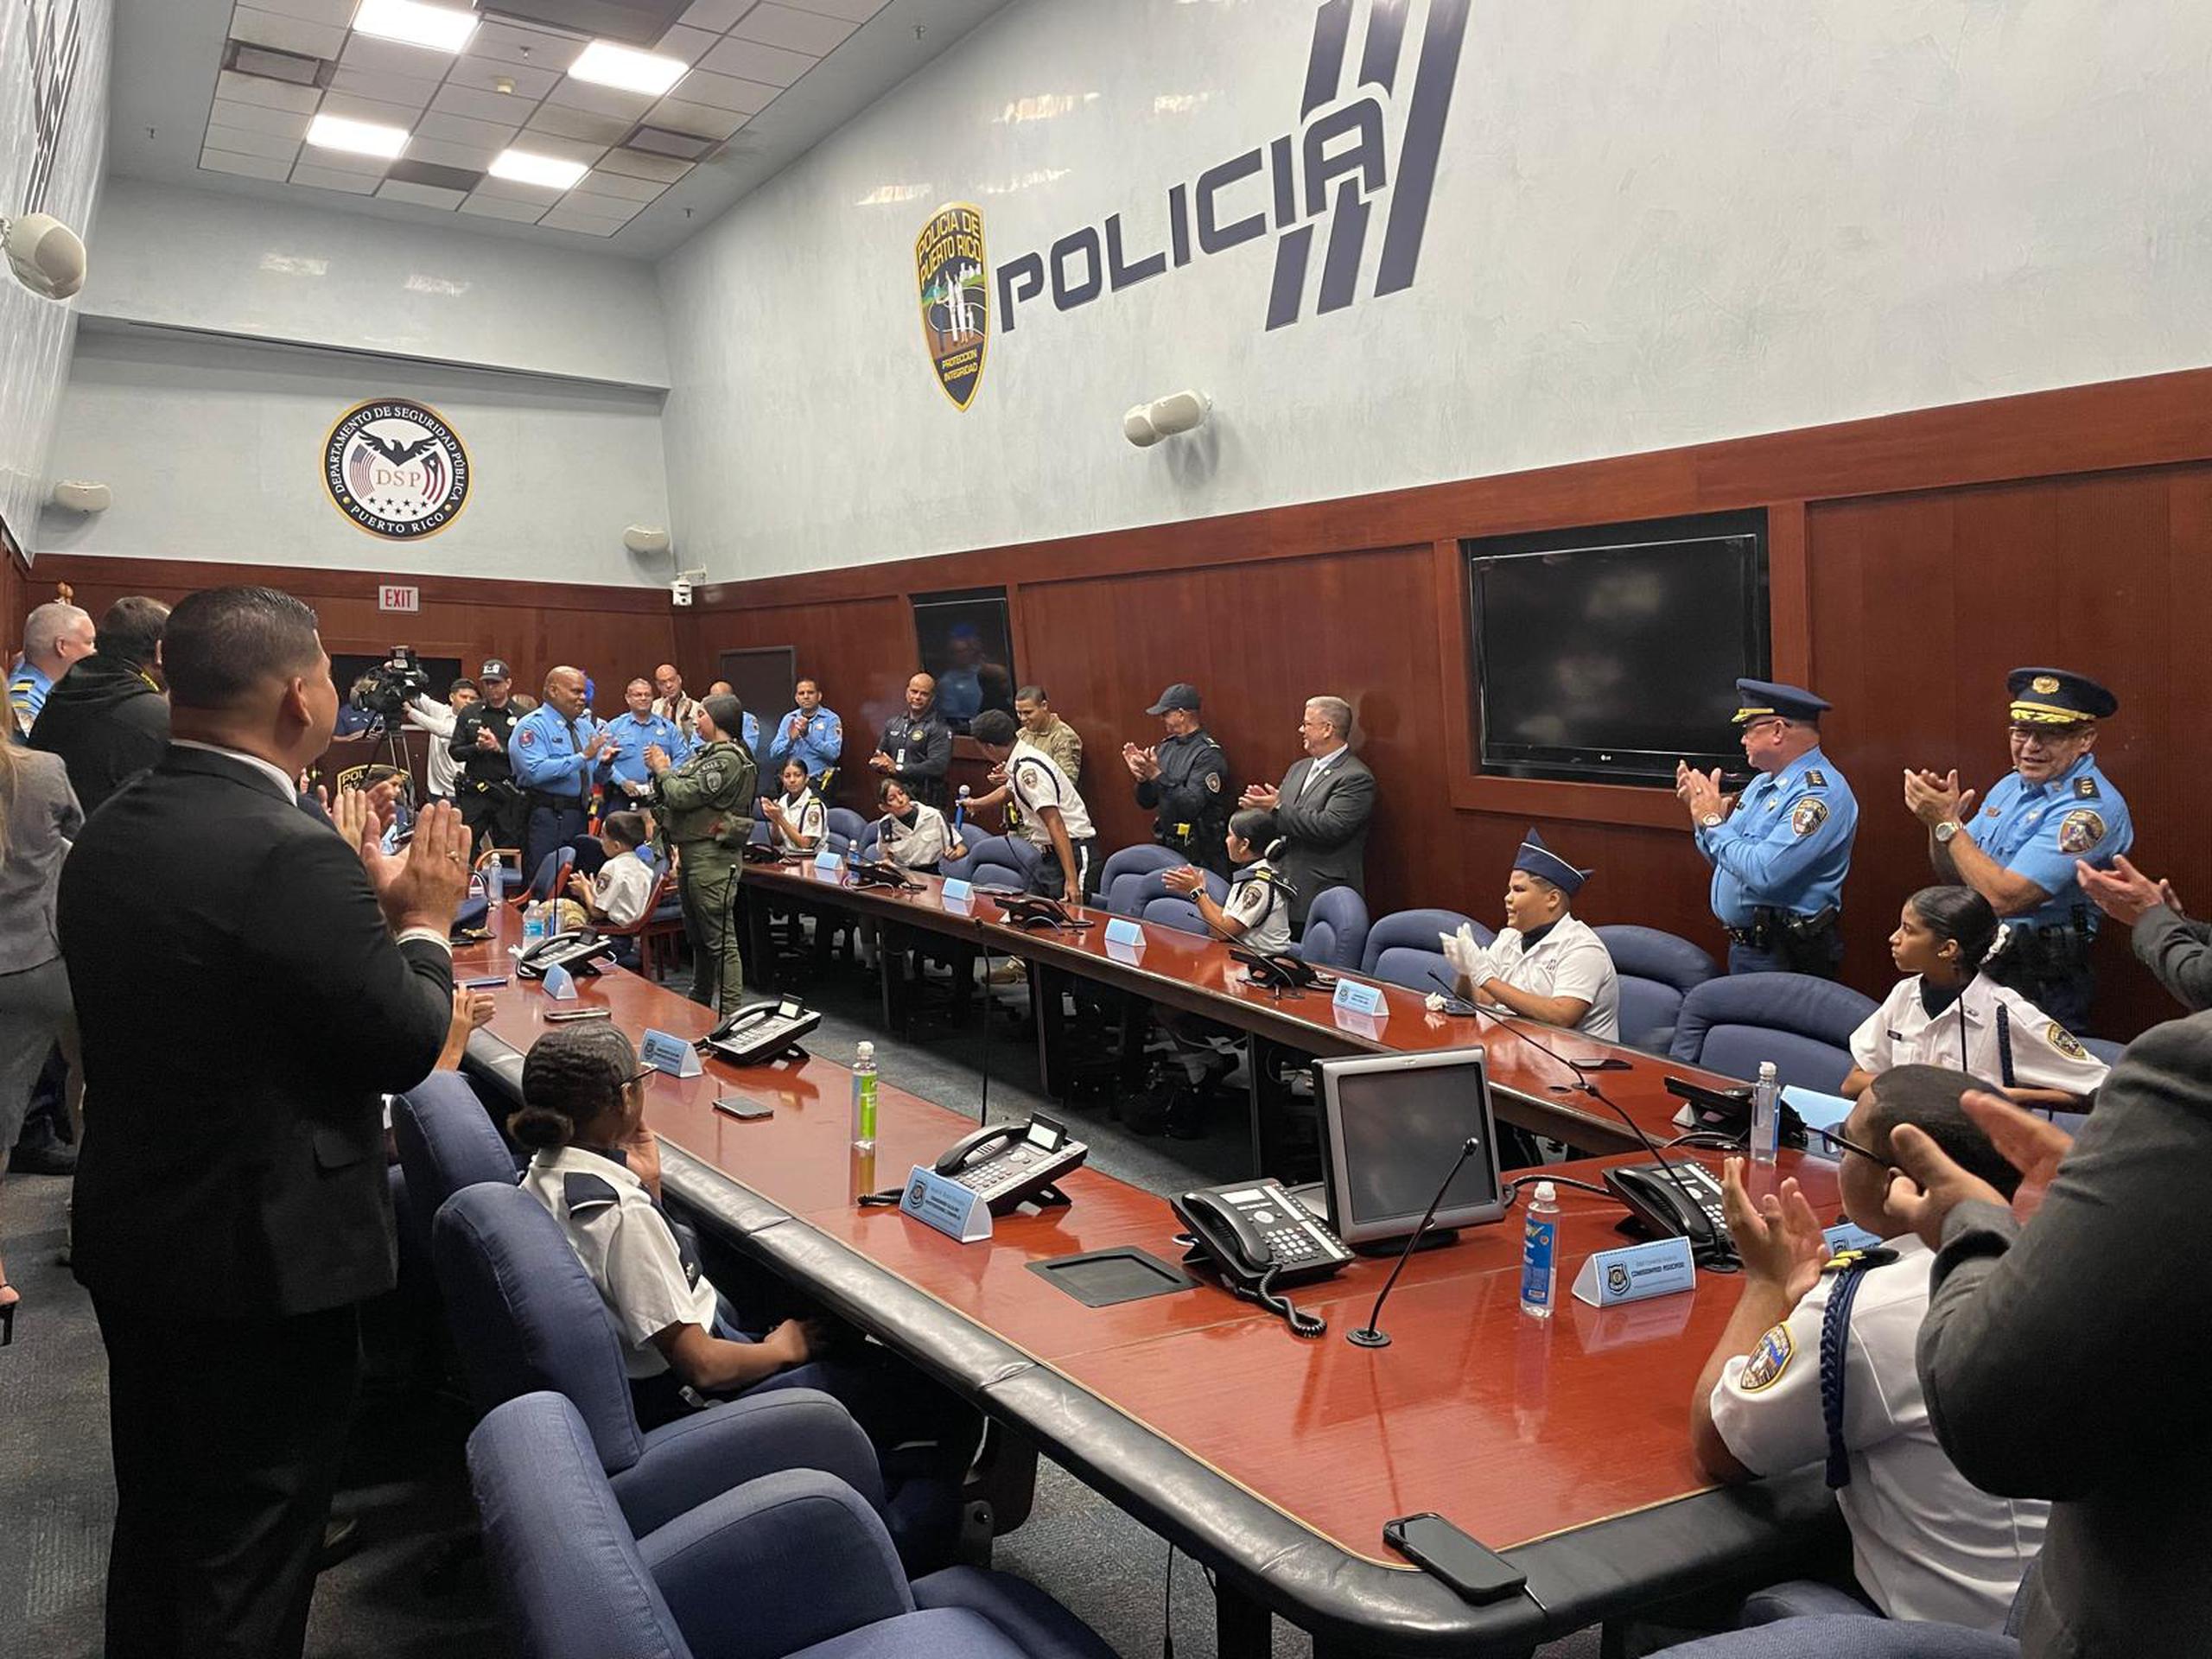 18 niños y adolescentes, en su mayoría de la Liga Atlética Policíaca, ocuparon el puesto de la alta jerarquía de la Policía con motivo de la celebración de 81 años del programa.